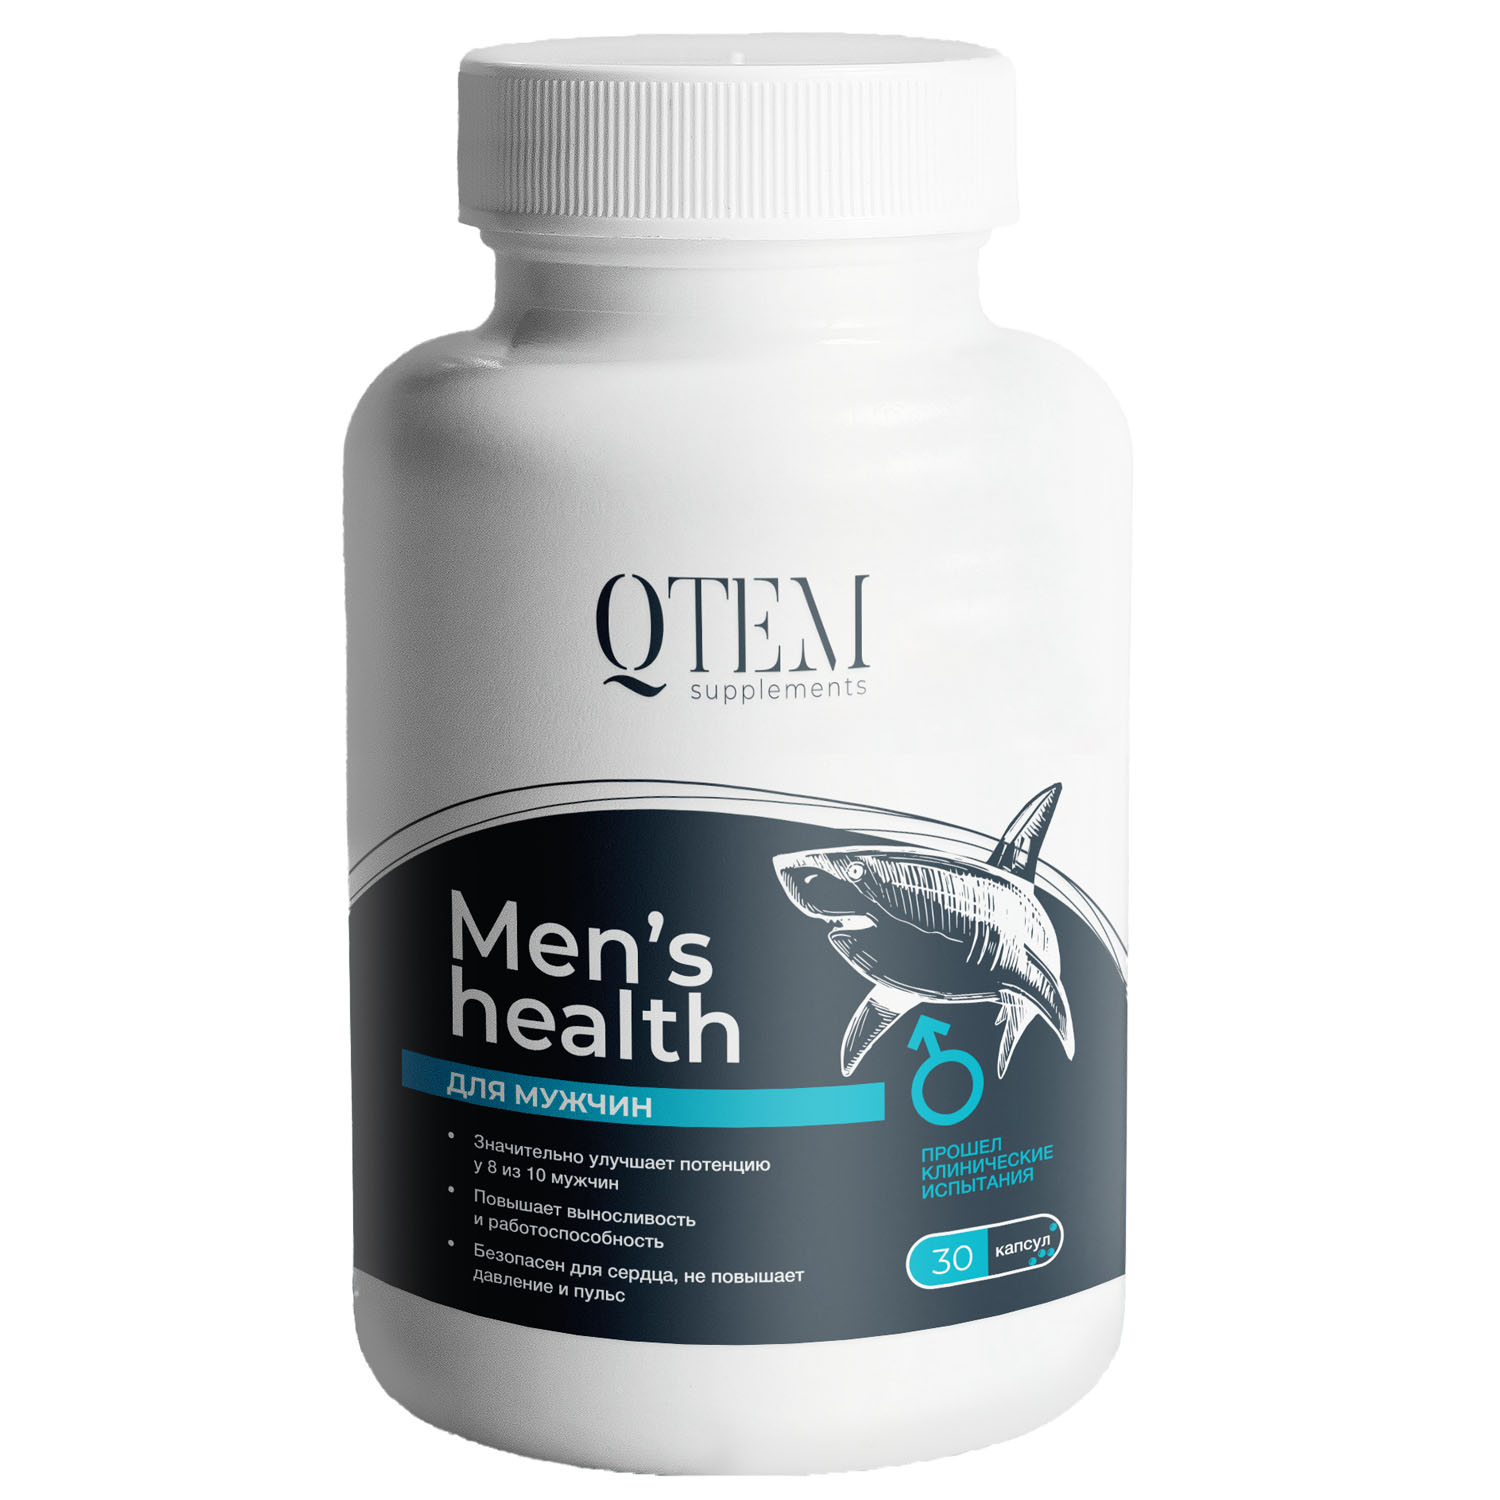 qtem набор коллагеновый напиток для женского здоровья и красоты 2 1 qtem supplement Qtem Мужской комплекс Men’s Health«Экстра сила», 30 капсул (Qtem, Supplement)